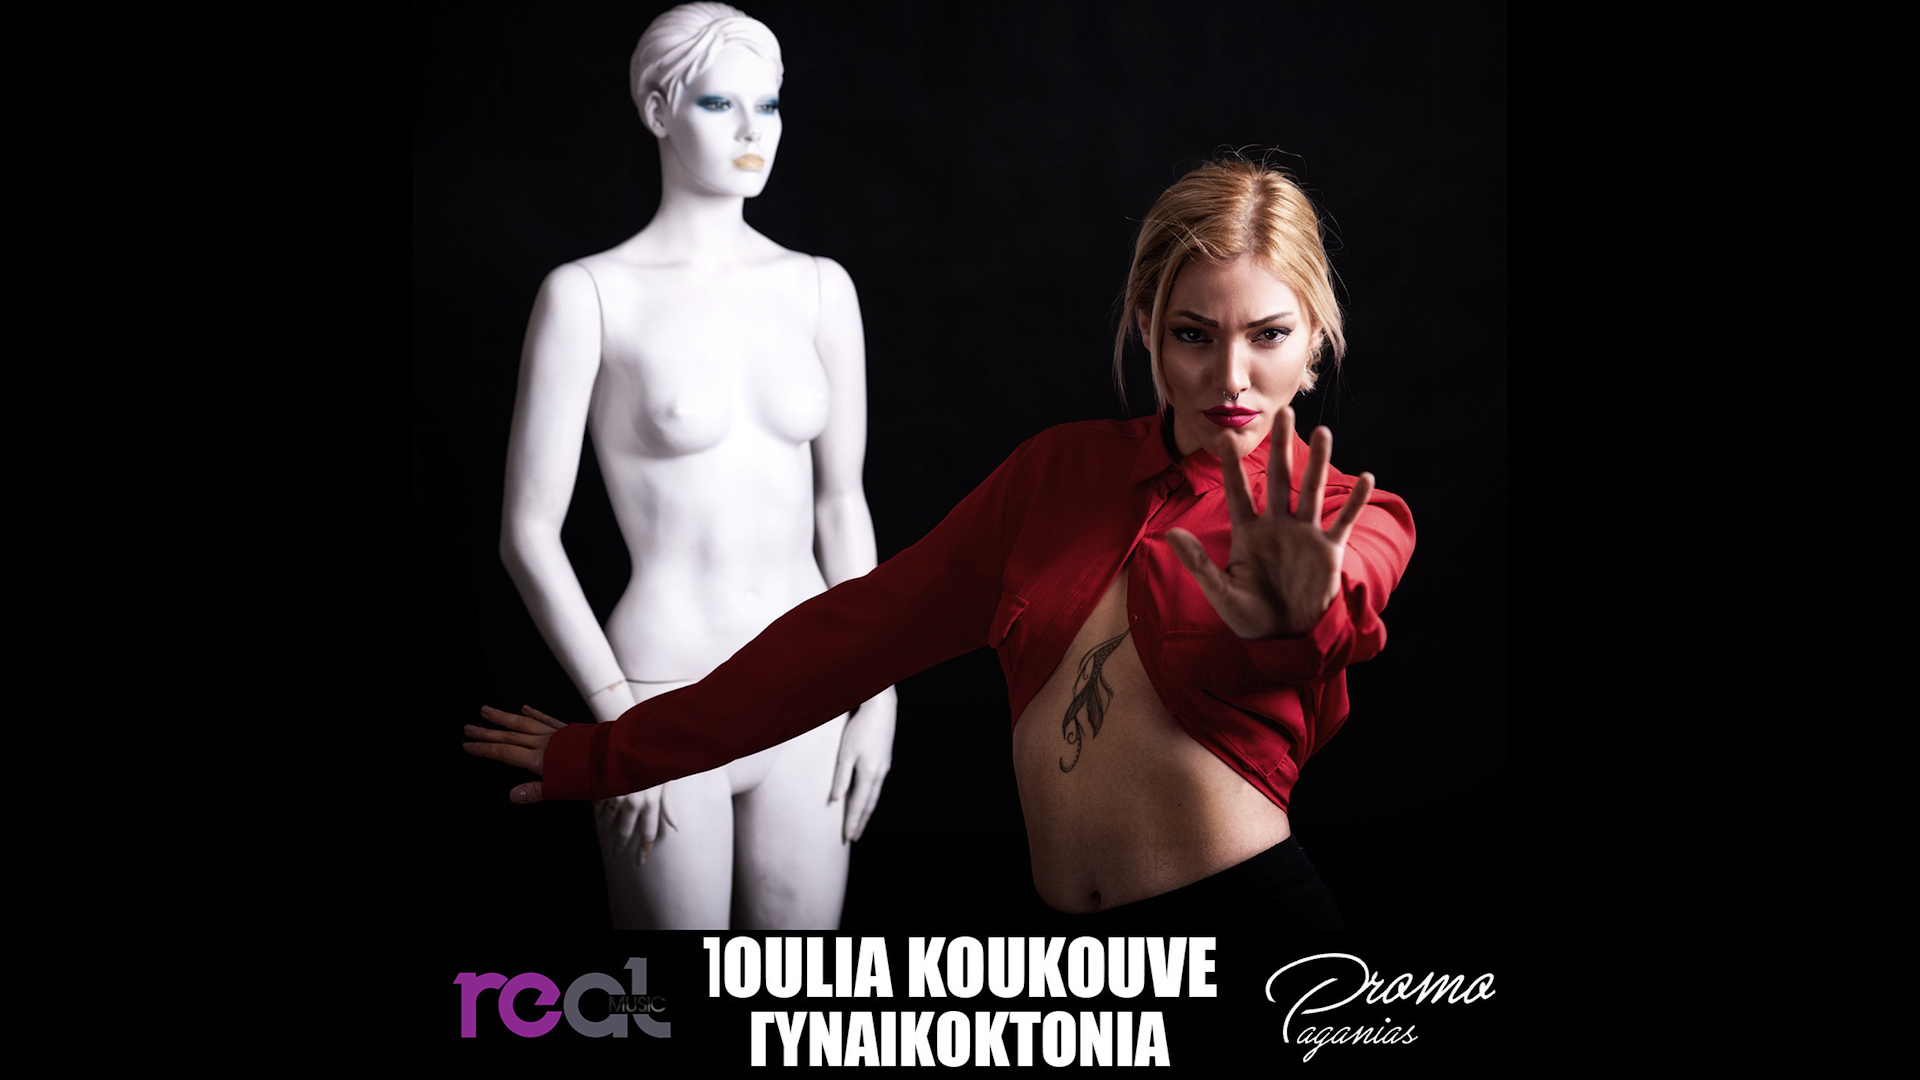 Ιουλία Κουκουβέ | «Γυναικοκτονία» Η φωνή κάθε κακοποιημένης γυναίκας μέσα από το νέο τραγούδι της Κουκουβέ !